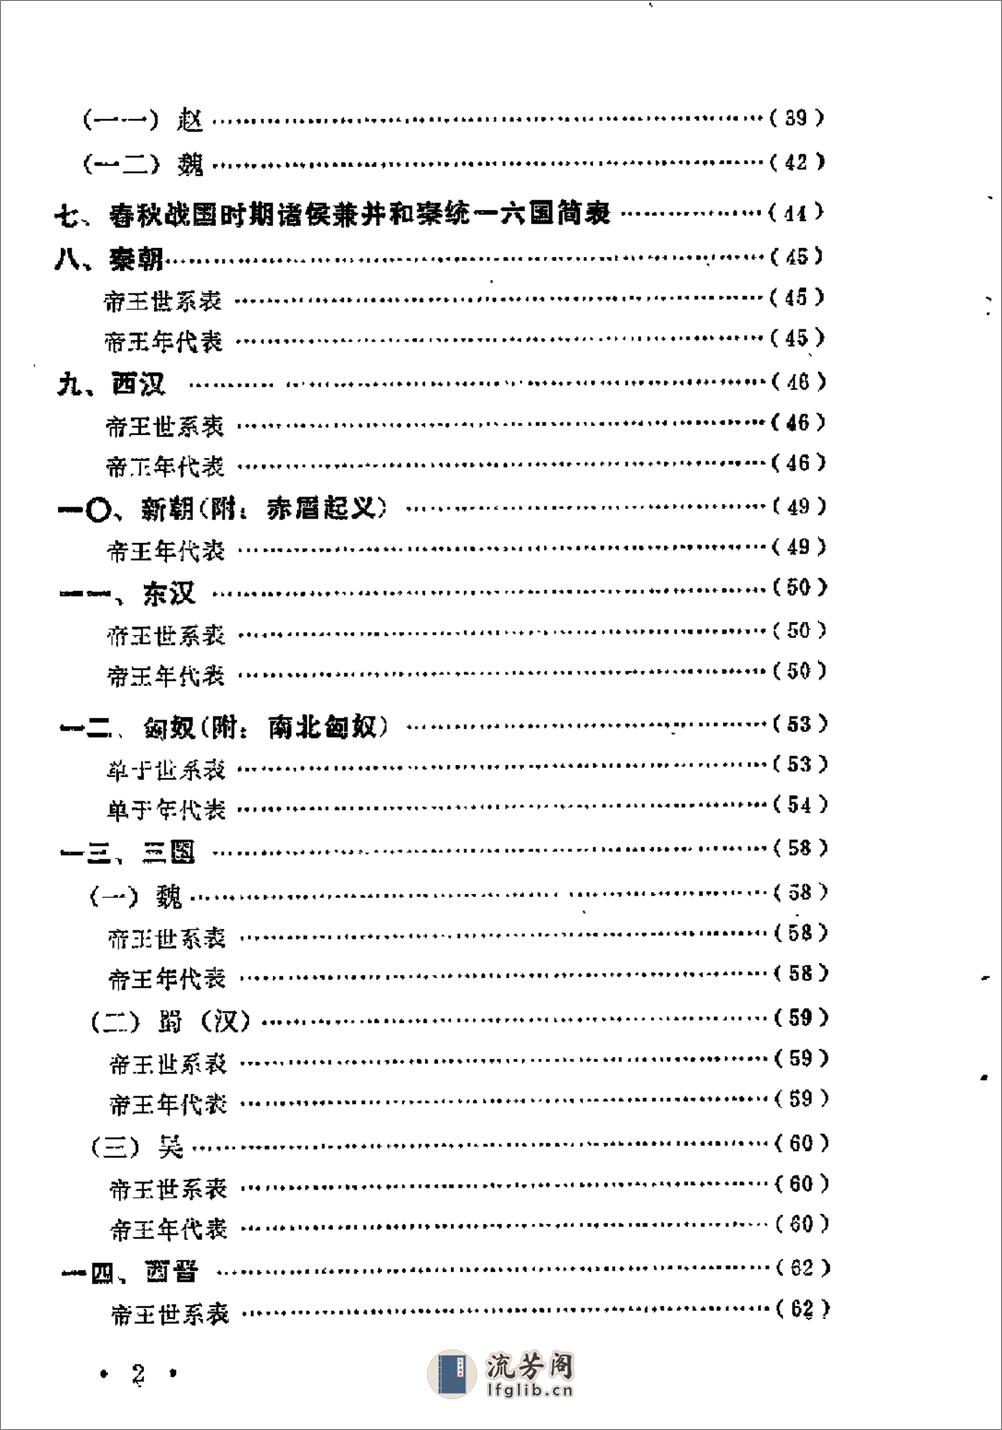 中国历史纪年简表·陈作良·中央党校1985 - 第5页预览图